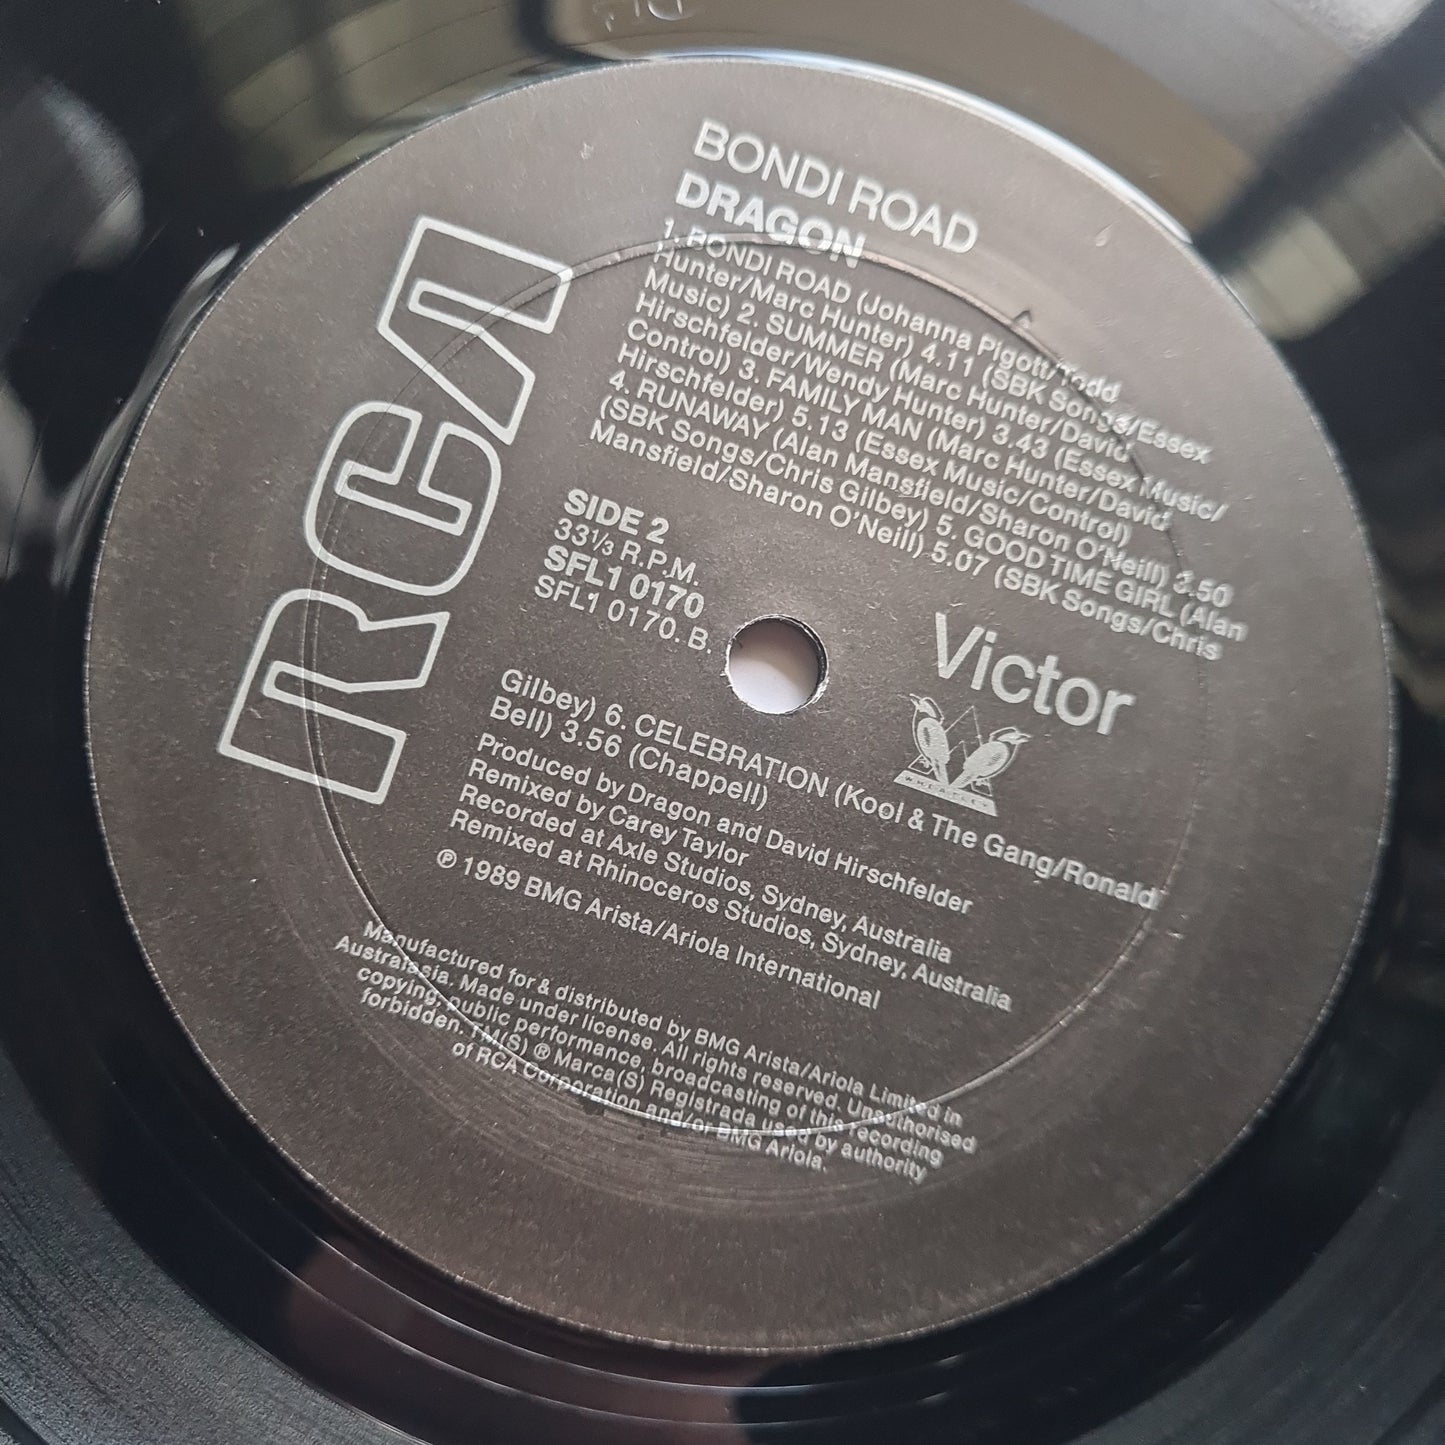 Dragon – Bondi Road - 1989 - Vinyl Record